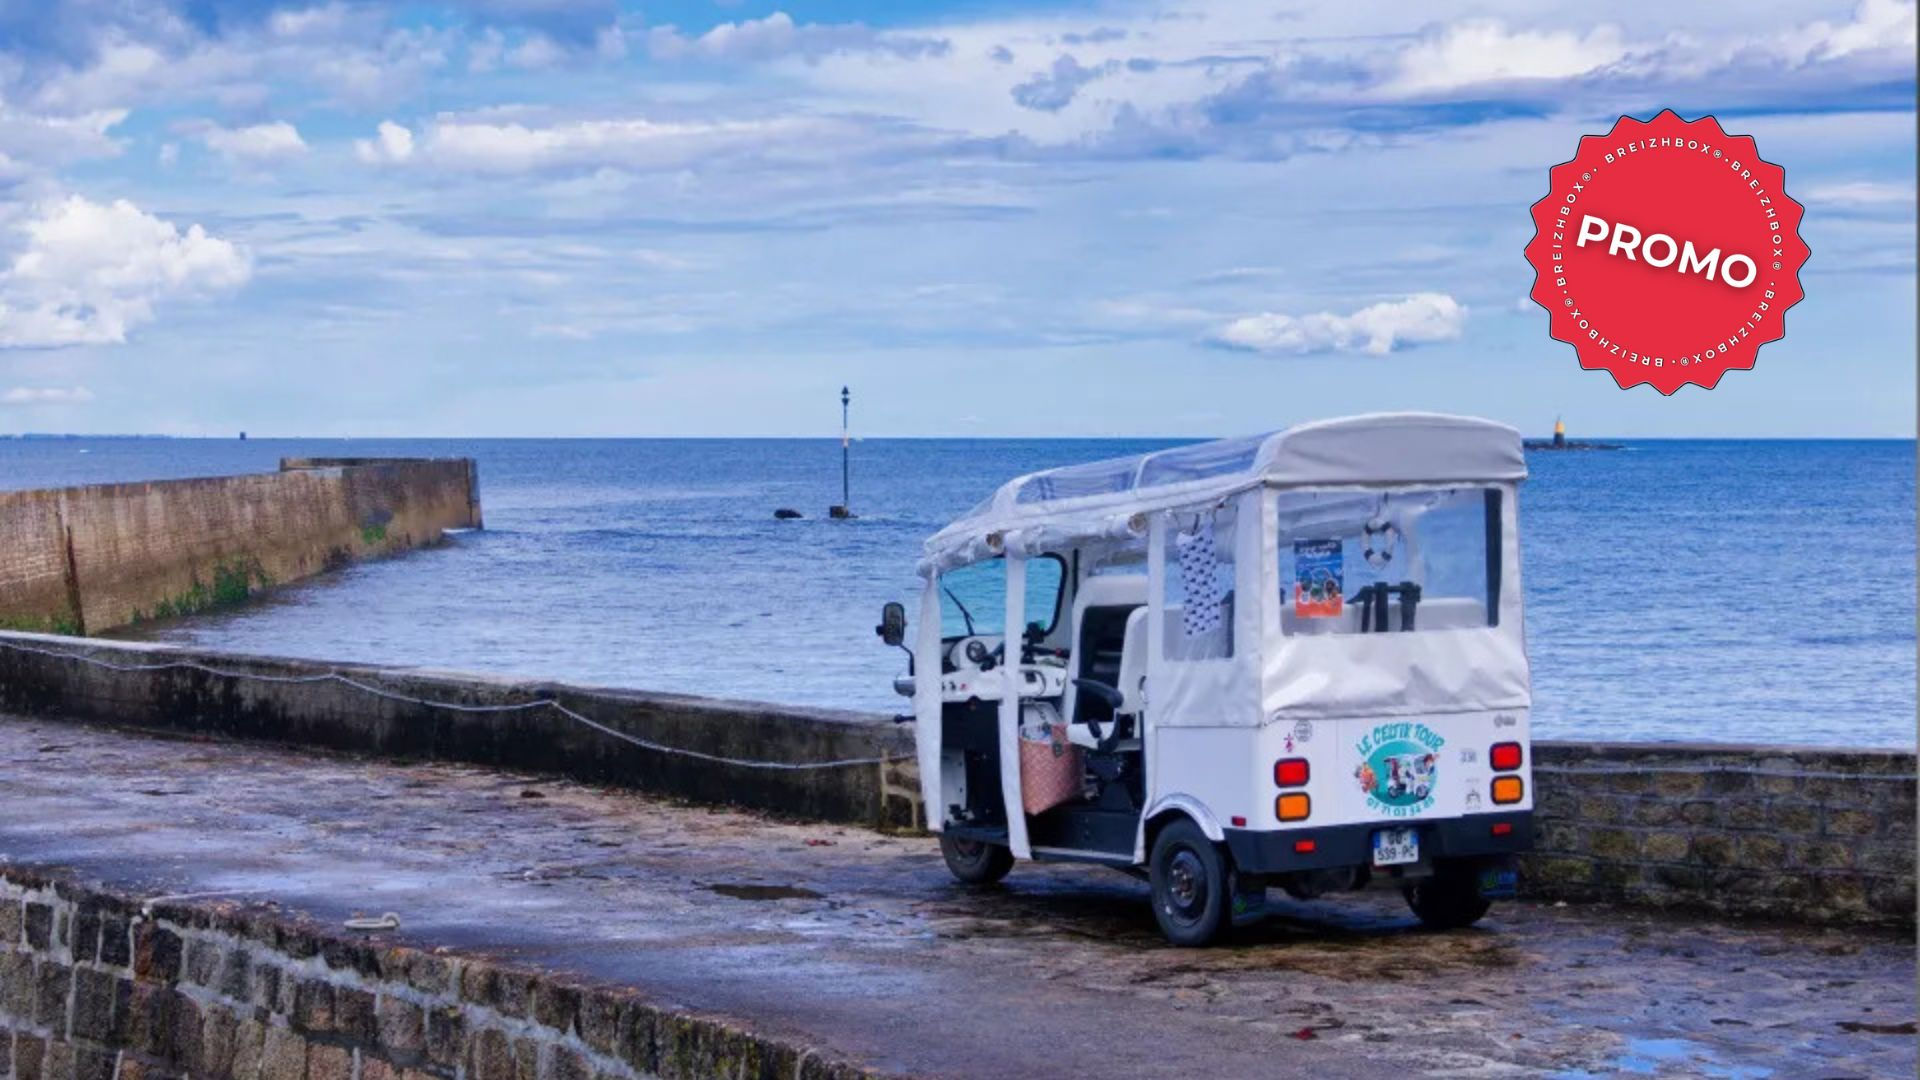 Séjour en Bretagne Sud à la découverte des plages et du littoral en tuktuk, avec repas et nuit en hôtel avec petit-déjeuner (Morbihan)